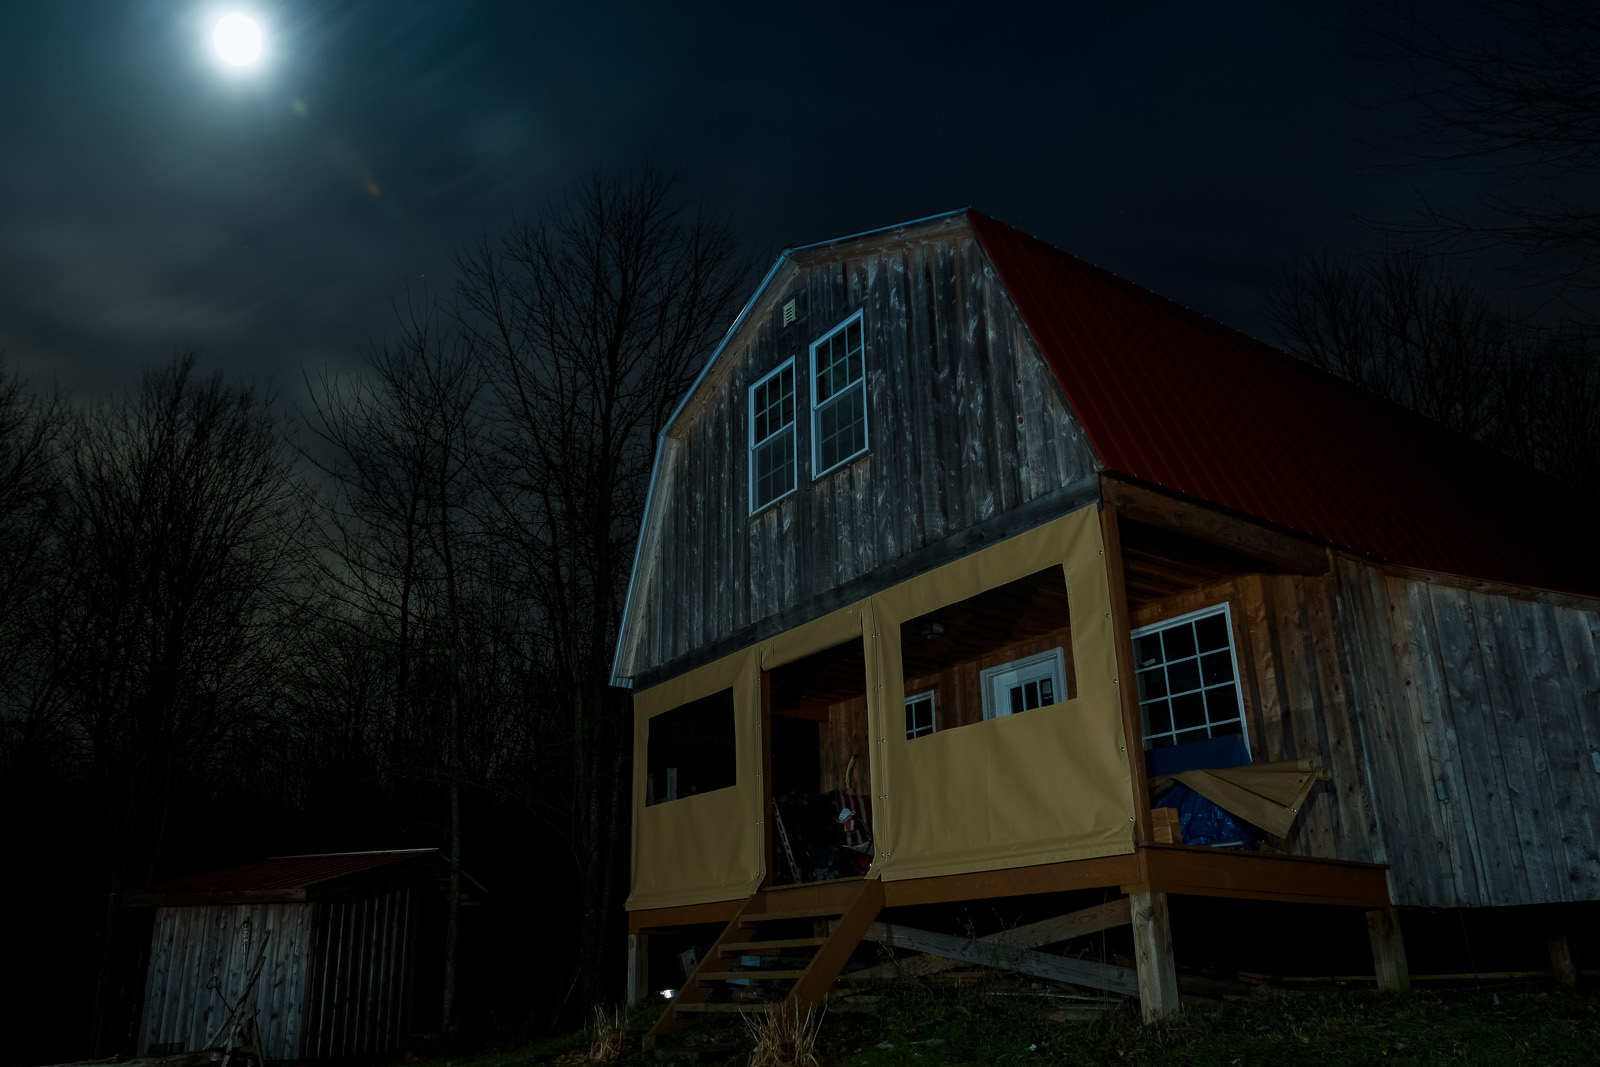 Cabin under moonlight